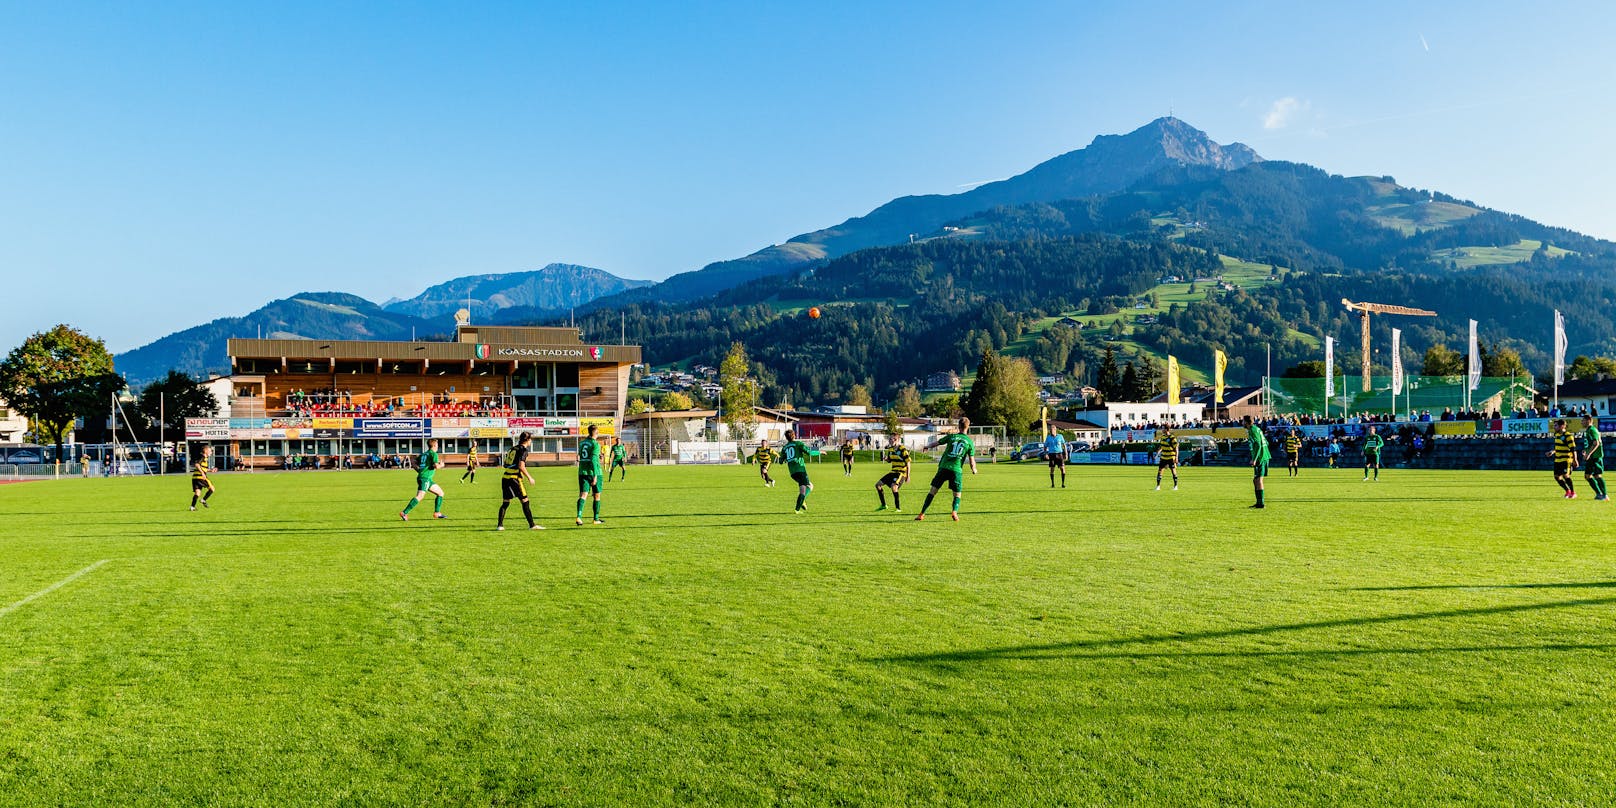 Symbolbild (Koasastadion in St. Johann in Tirol)